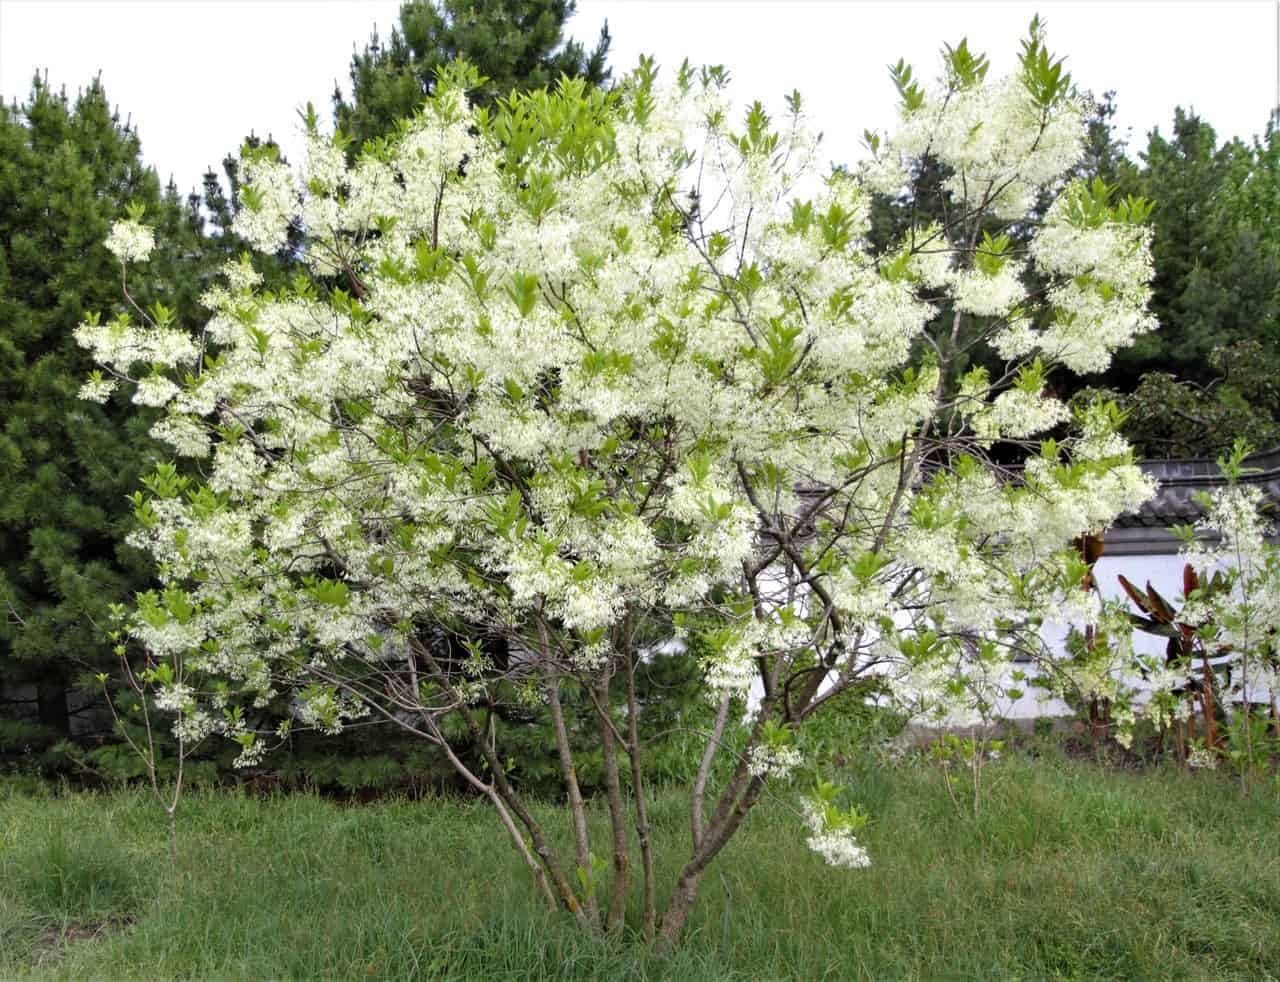 22 Terrific Flowering Trees For Tennessee Progardentips